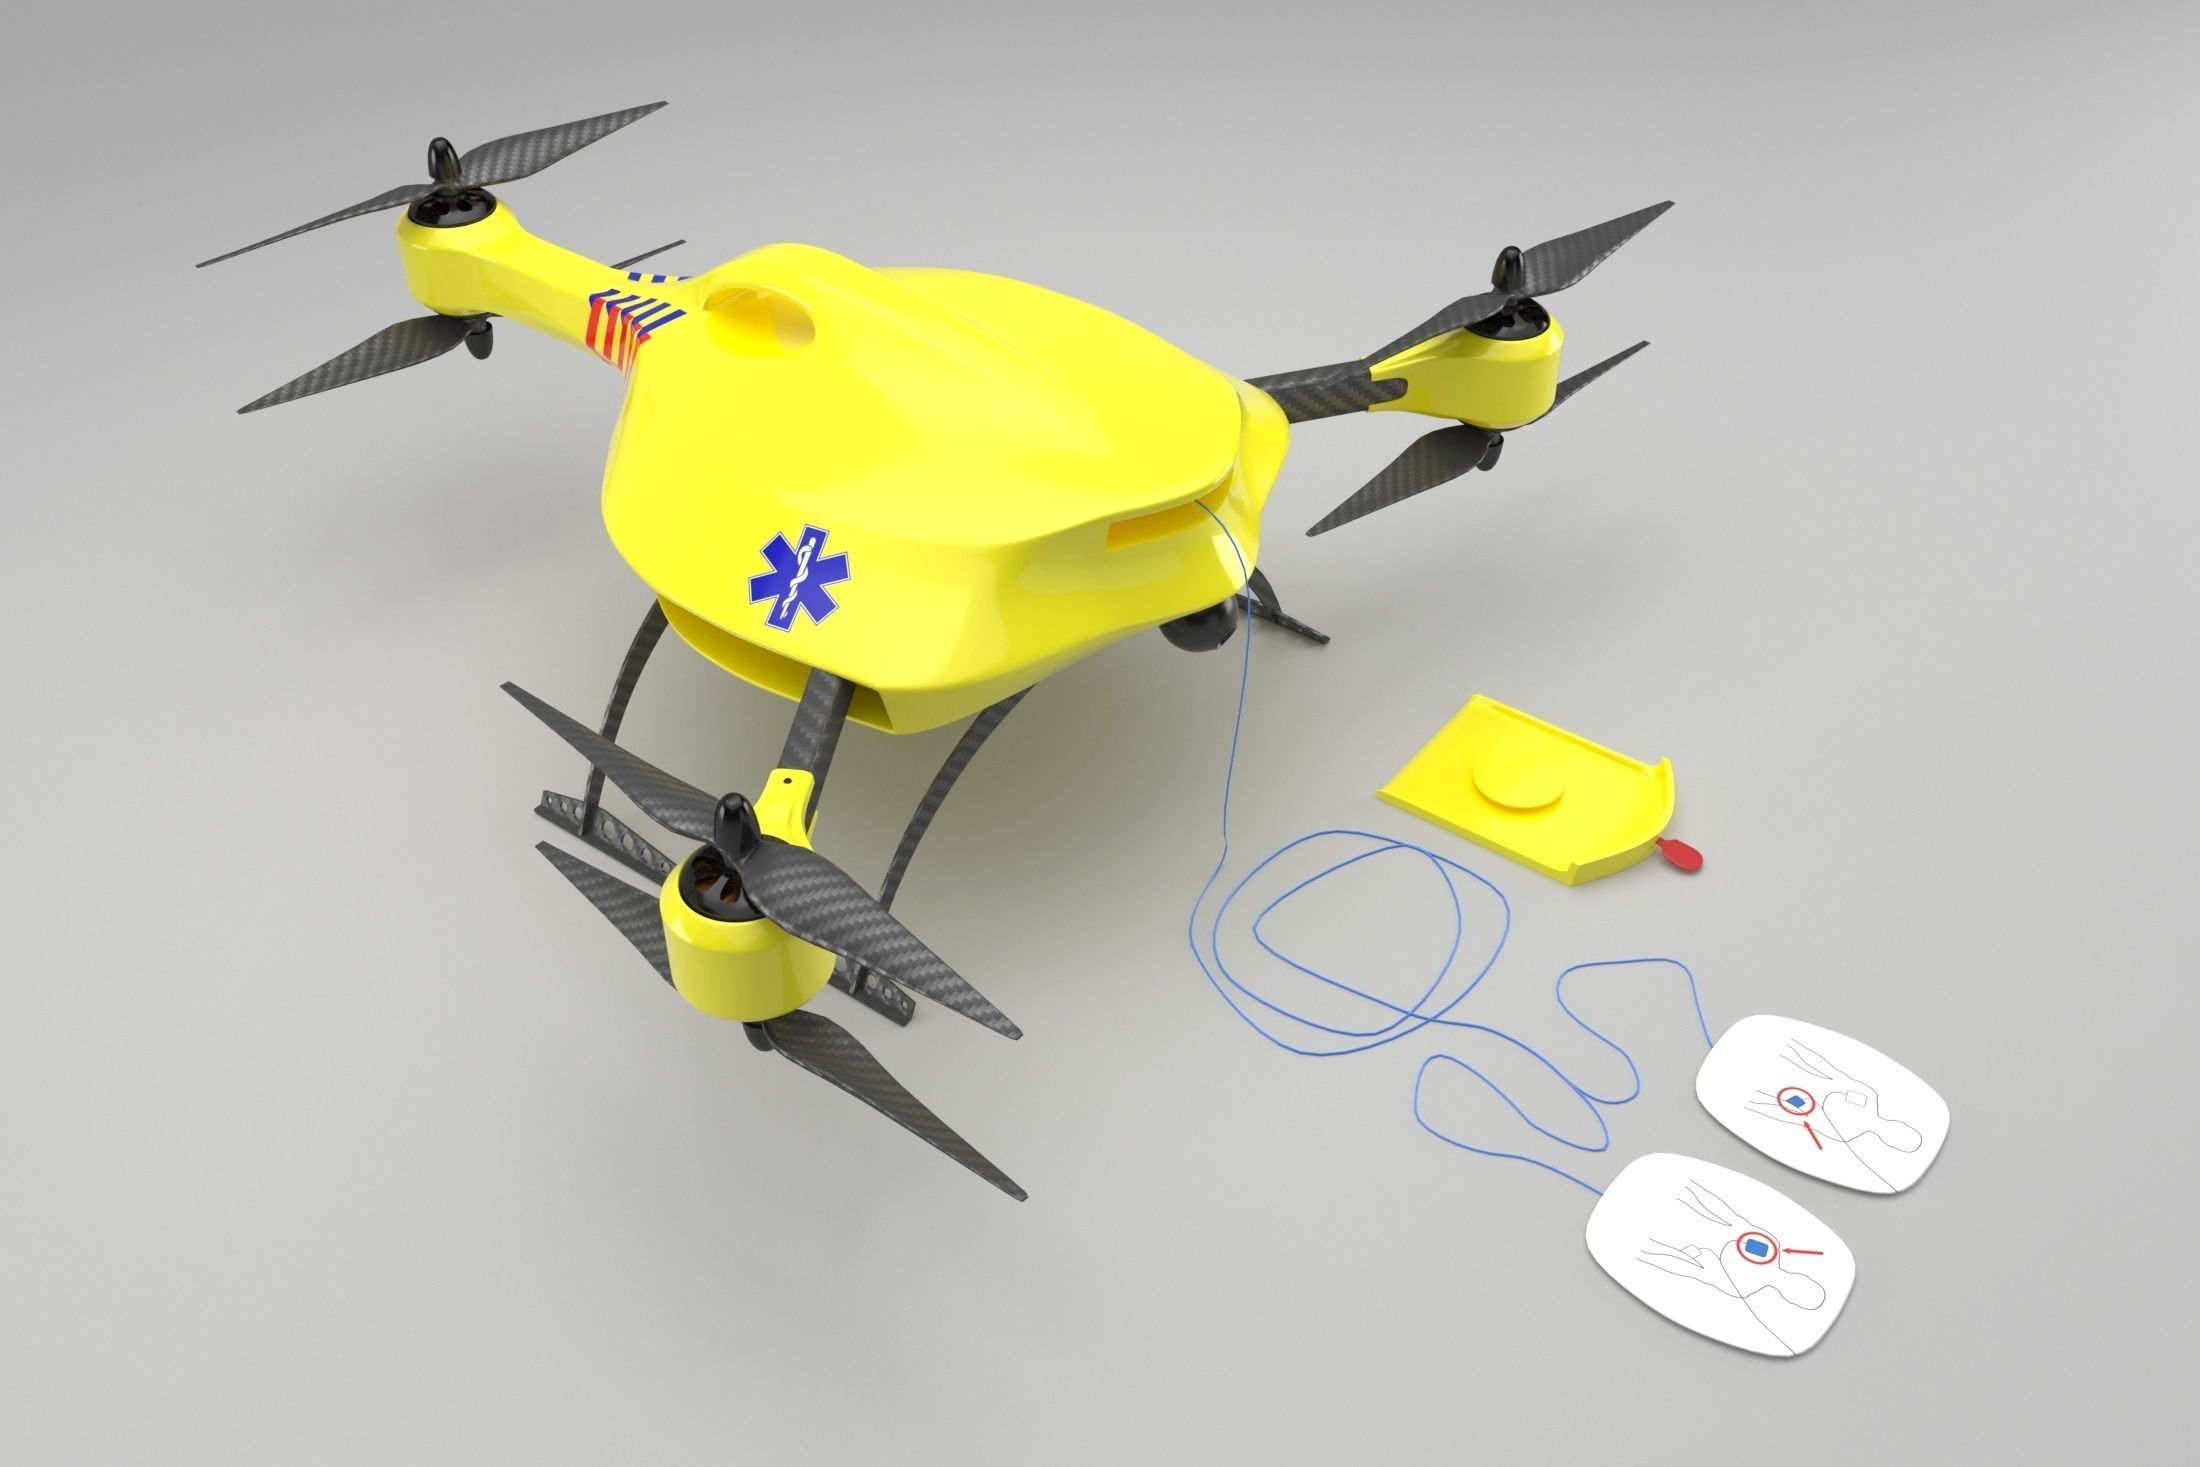 ambulance-drone-3d-model-max-obj-3ds-fbx.jpg